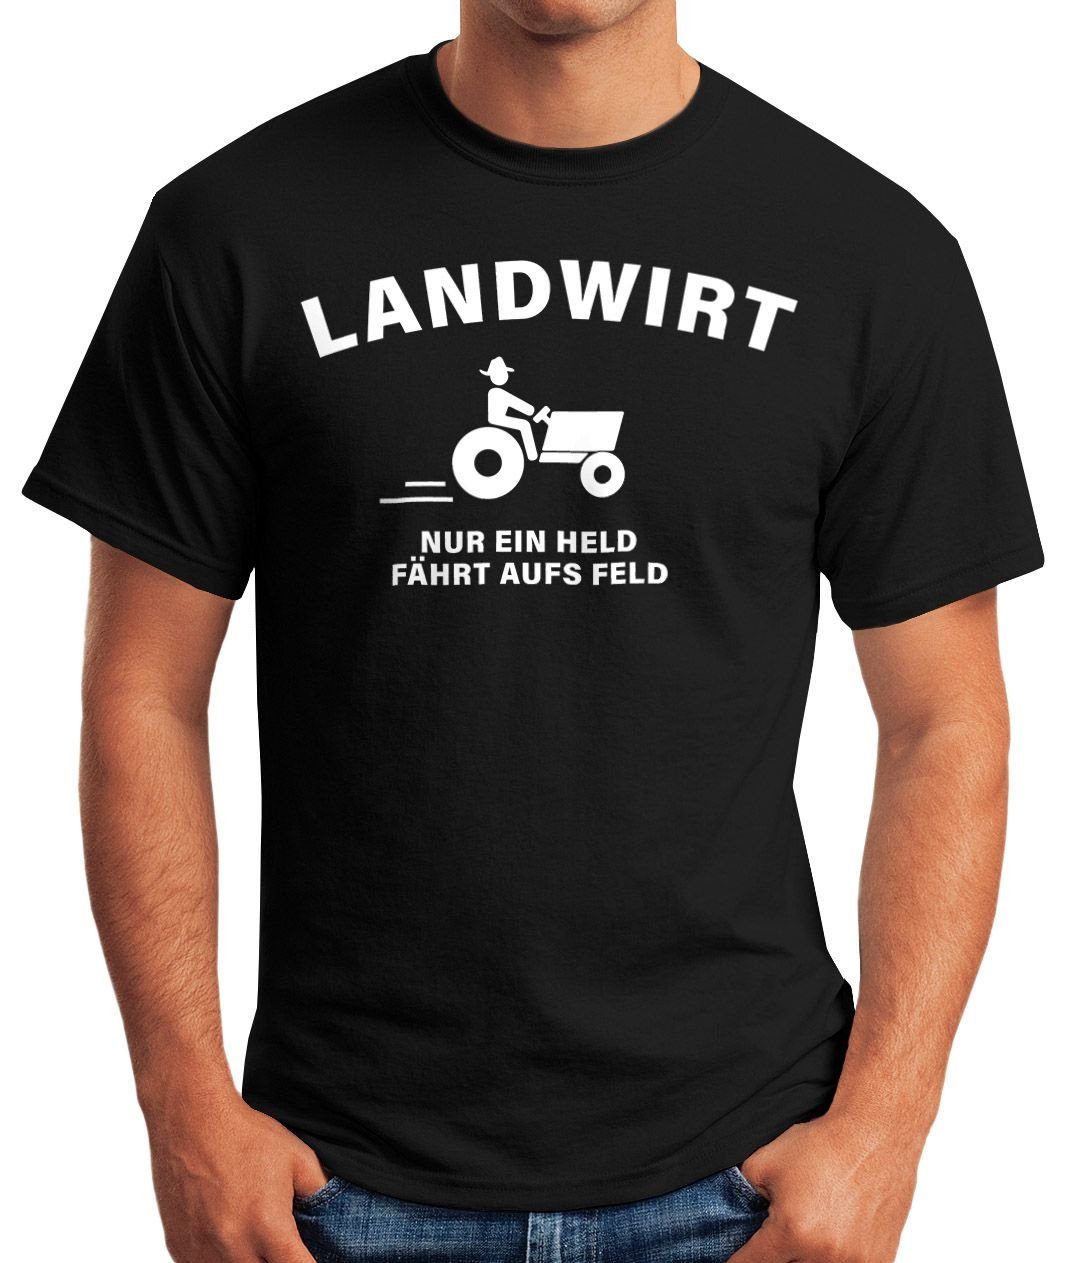 mit held Landwirt Print-Shirt Moonworks® aufs fährt T-Shirt MoonWorks nur ein Feld schwarz Herren Print